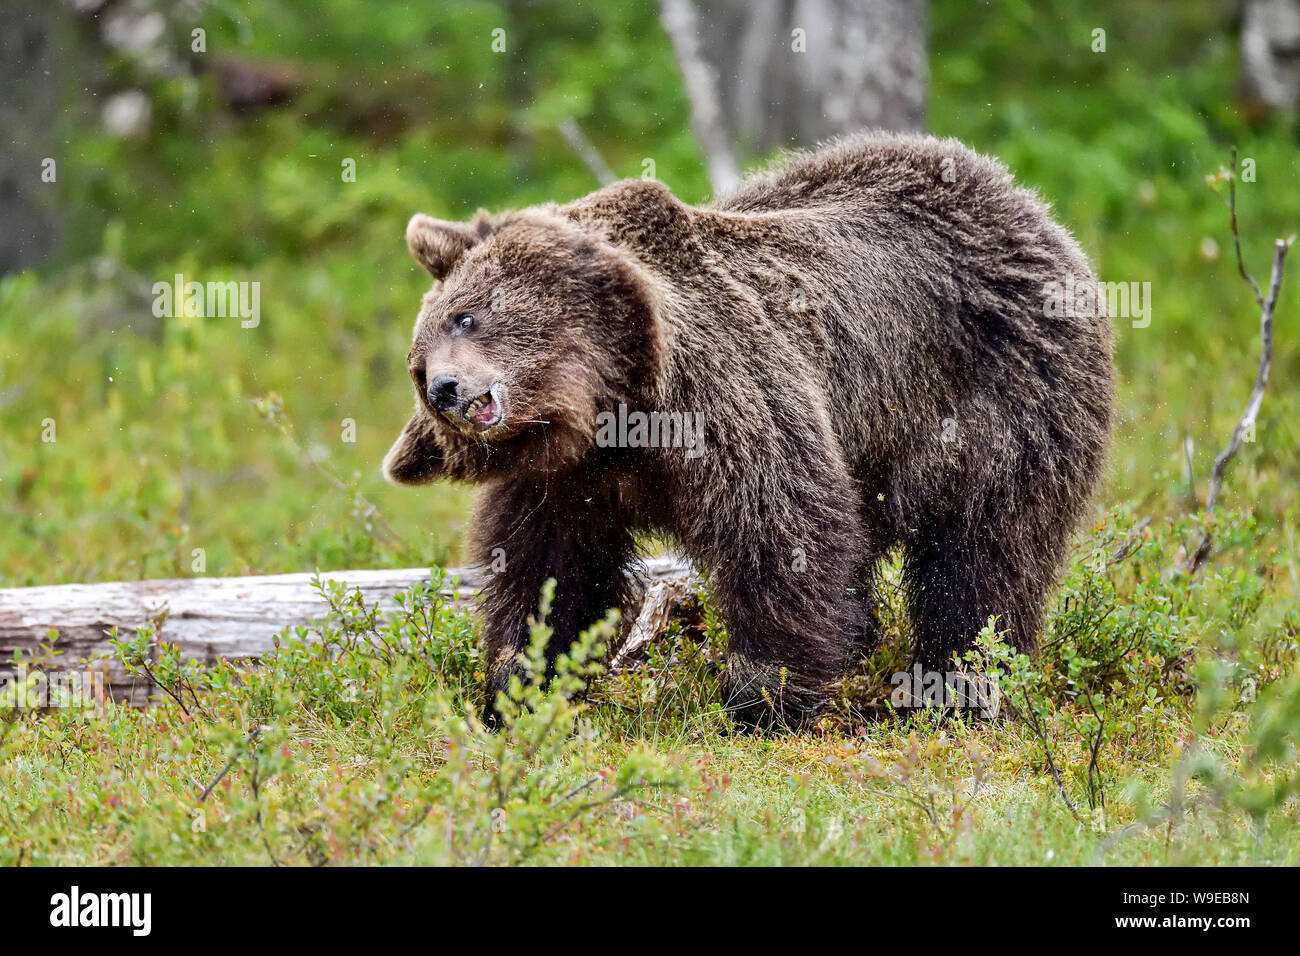 Brauner Bär hat einige allgemeine Ordnung und Sauberkeit durch Abspülen alle Wasser und Staub aus dem Fell. Stockfoto